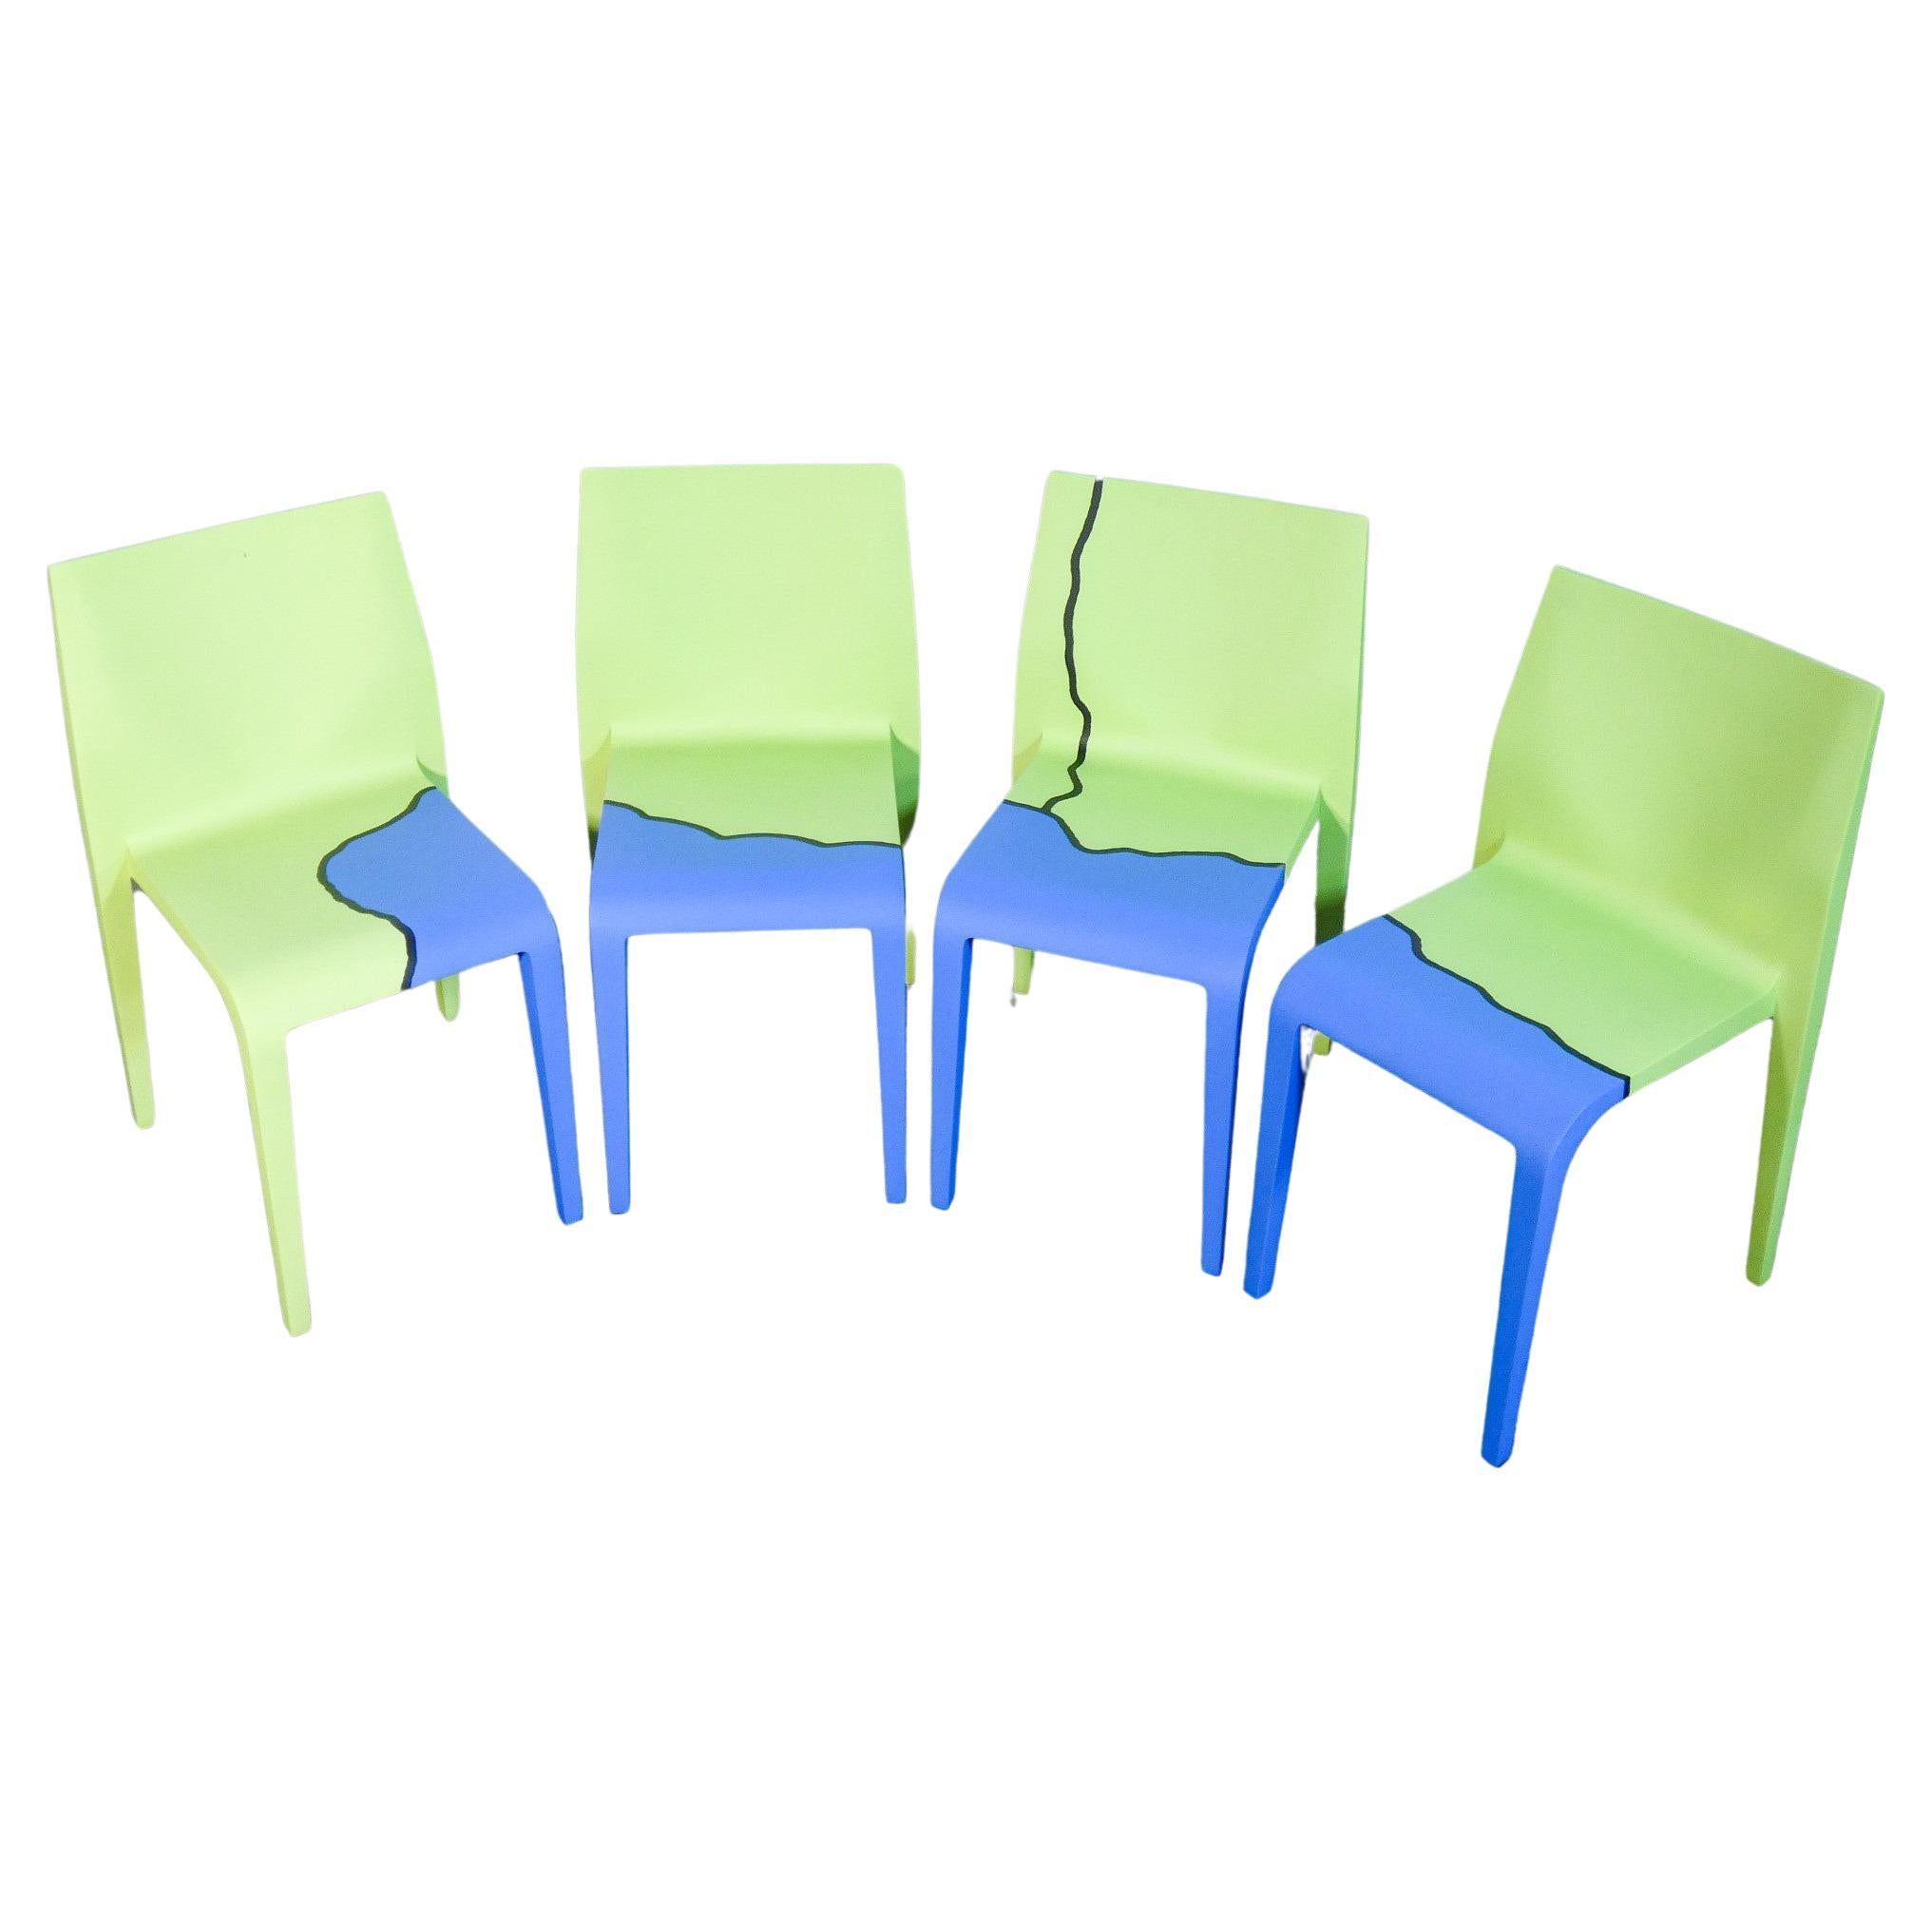 Riccardo Blumer Chairs